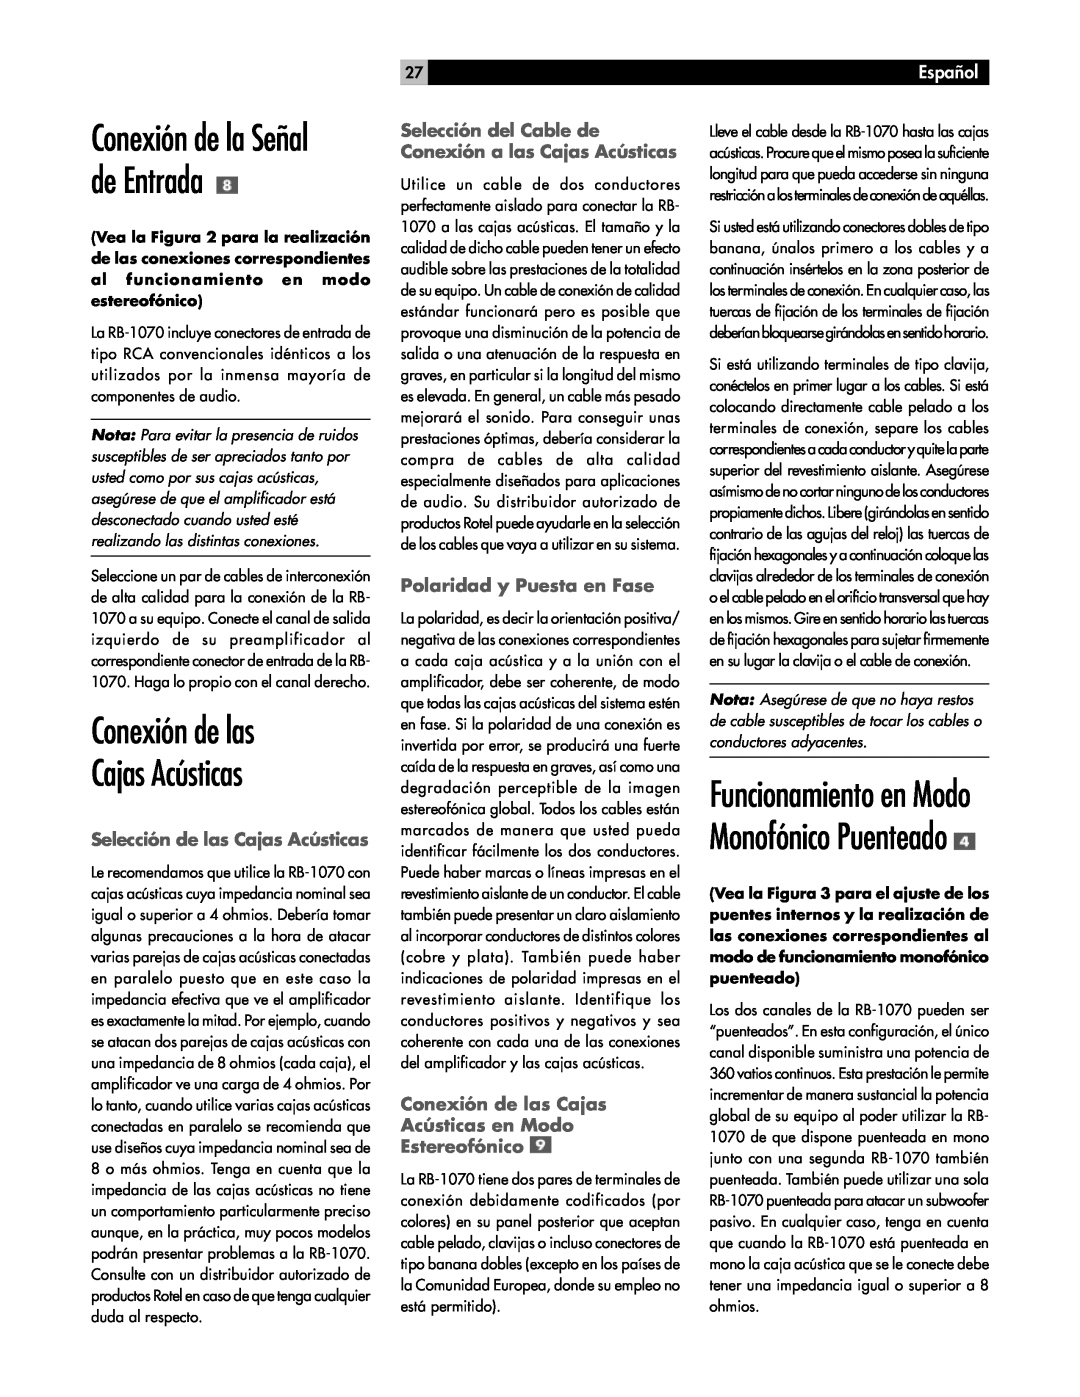 Rotel RB-1070 Conexión de las Cajas Acústicas, Conexión de la Señal de Entrada, Selección de las Cajas Acústicas, Español 